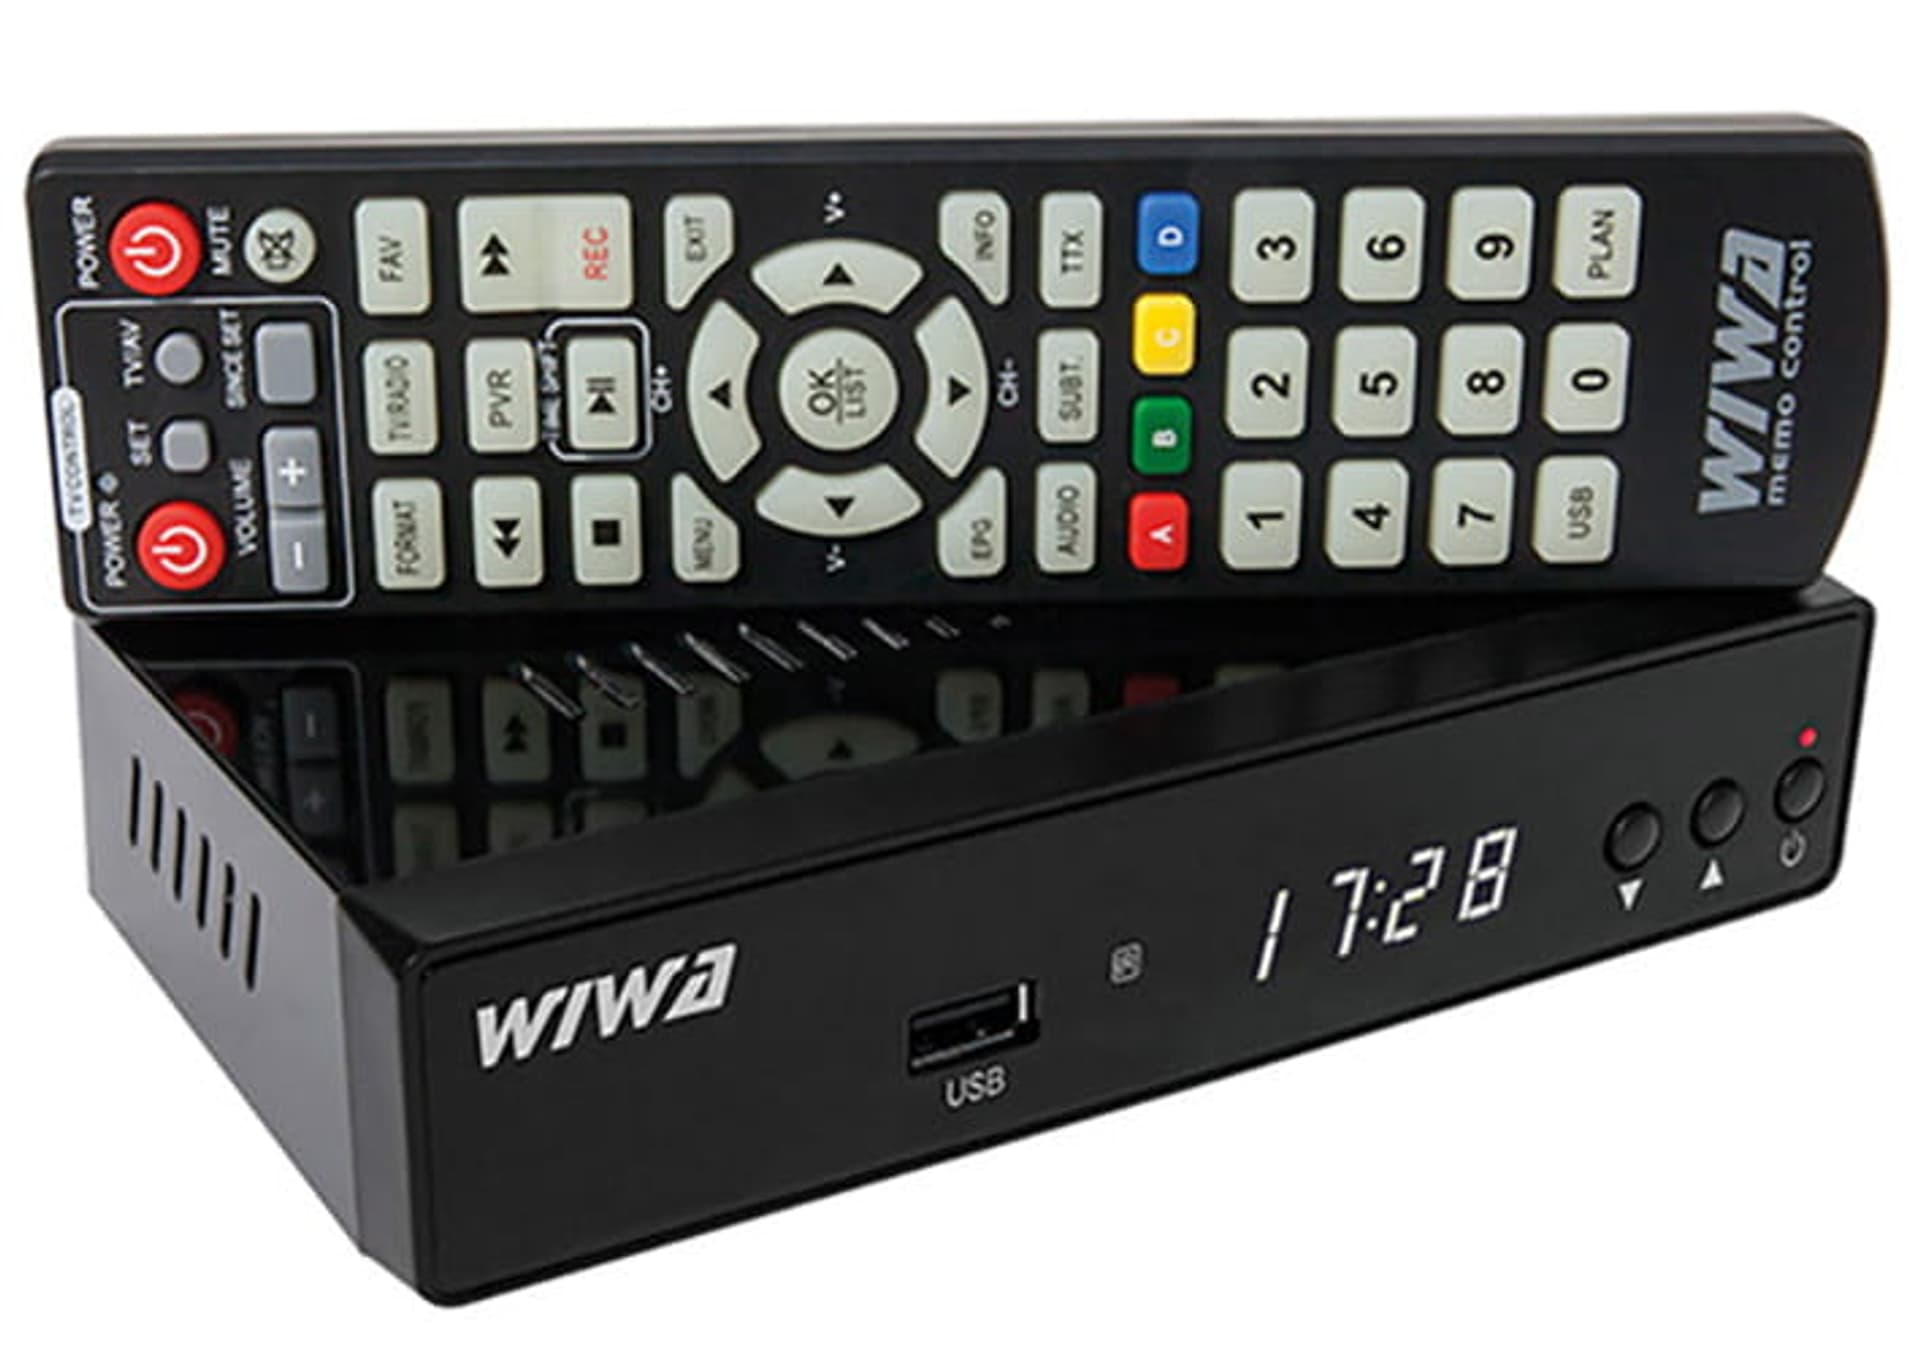 Wiwa Tuner Dekoder Tv Dvb-T2/Hevc H.265 Maxx